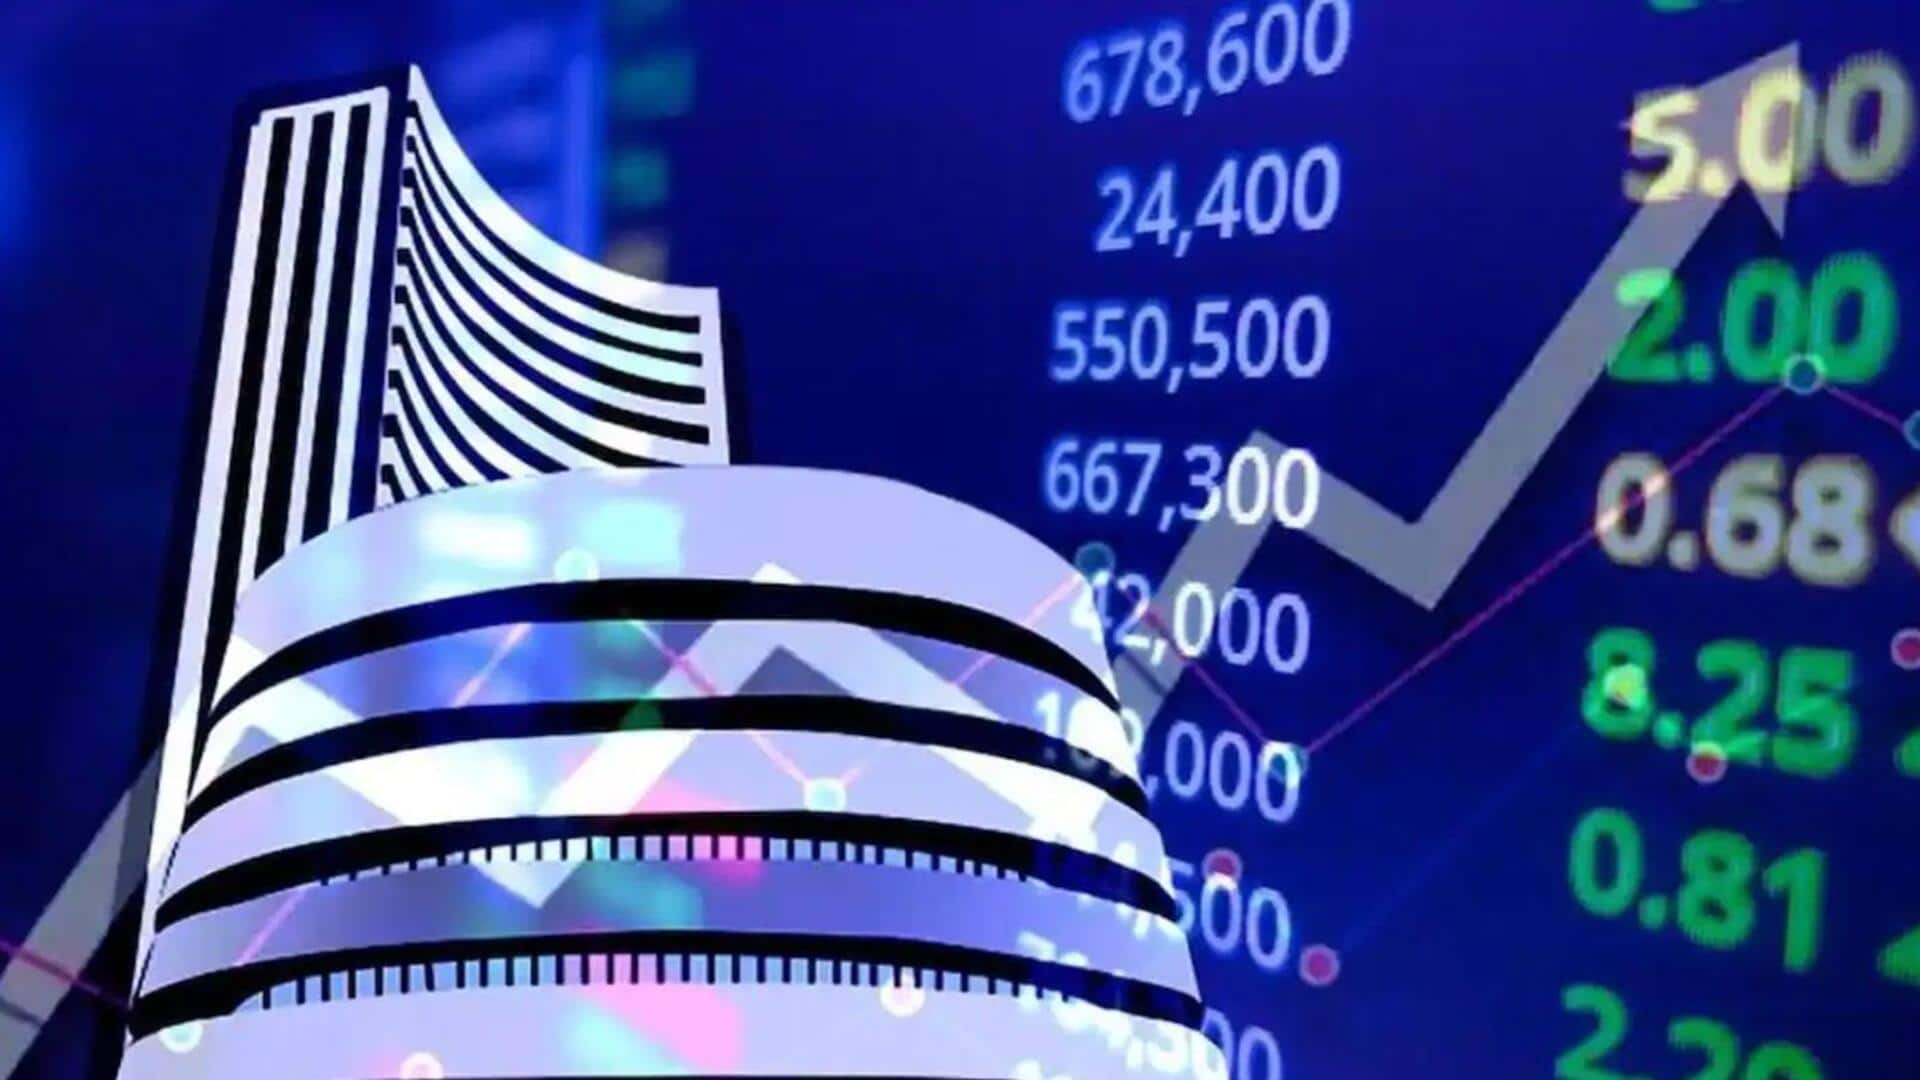 शेयर बाजार: सेंसेक्स 692 अंक ऊपर चढ़ा, निफ्टी में भी दर्ज हुई बढ़त 